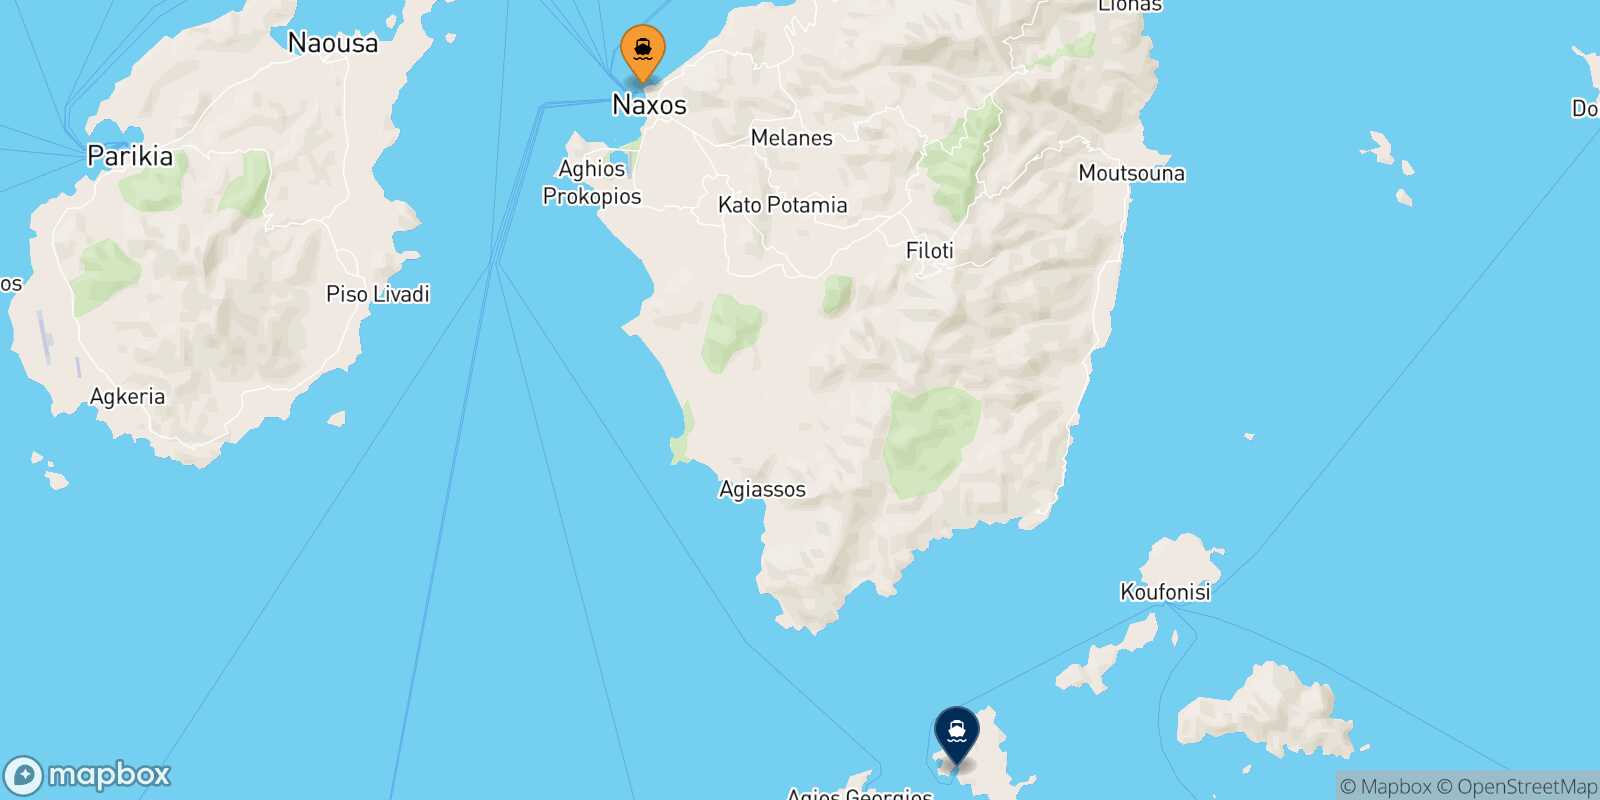 Naxos Schinoussa route map